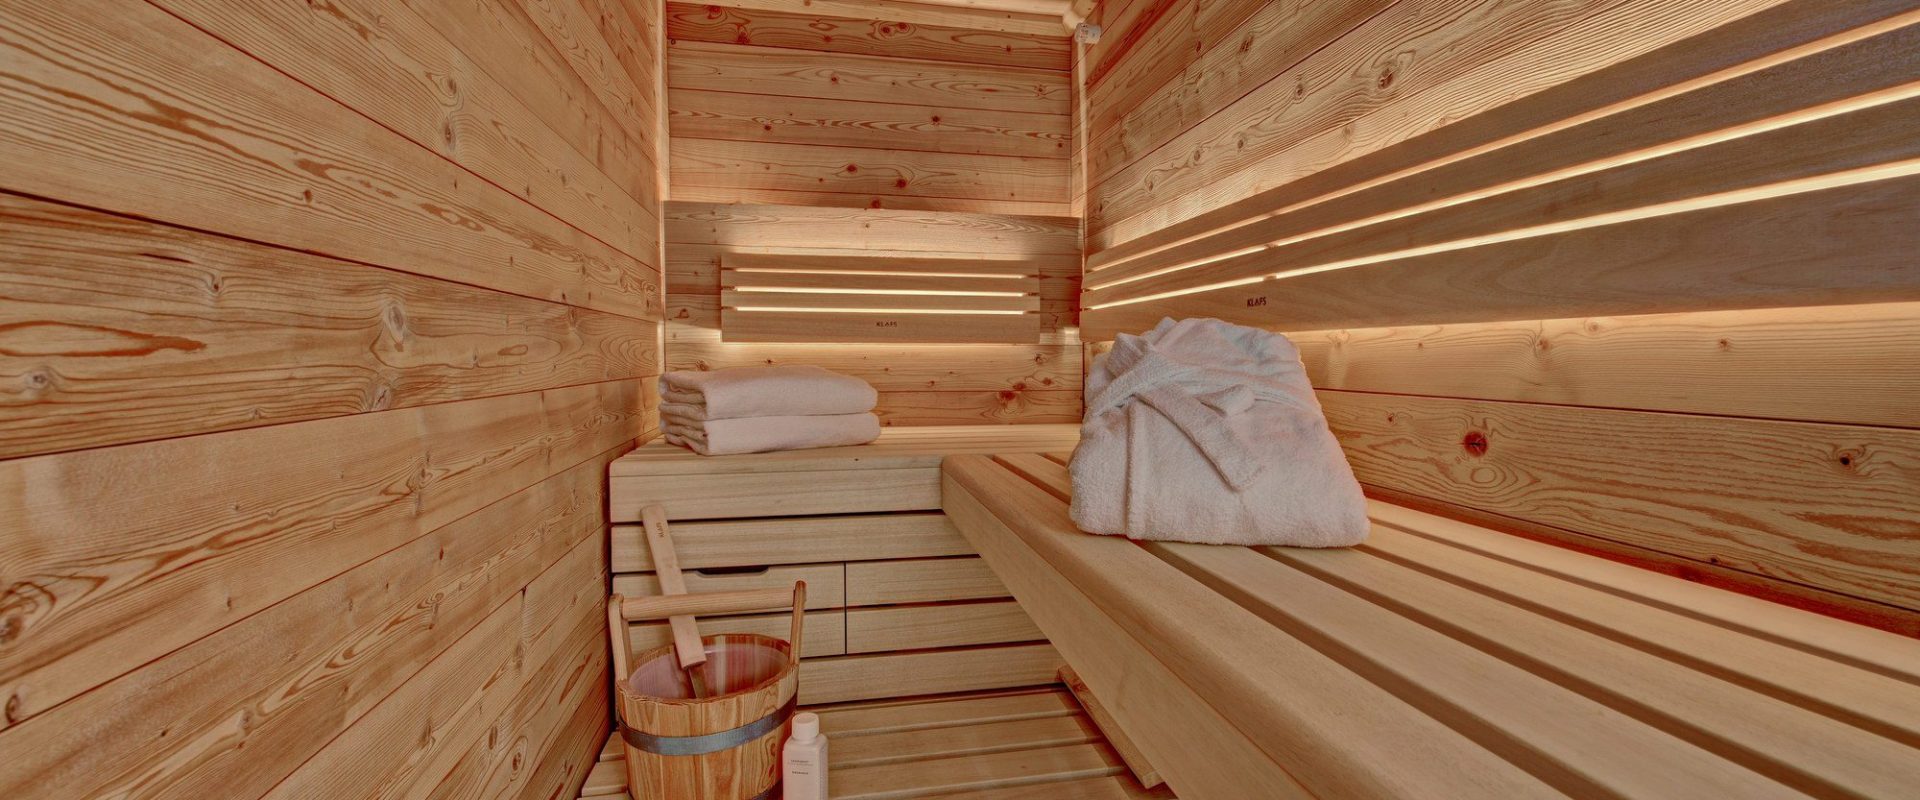 Chalet Rindalphorn Sauna